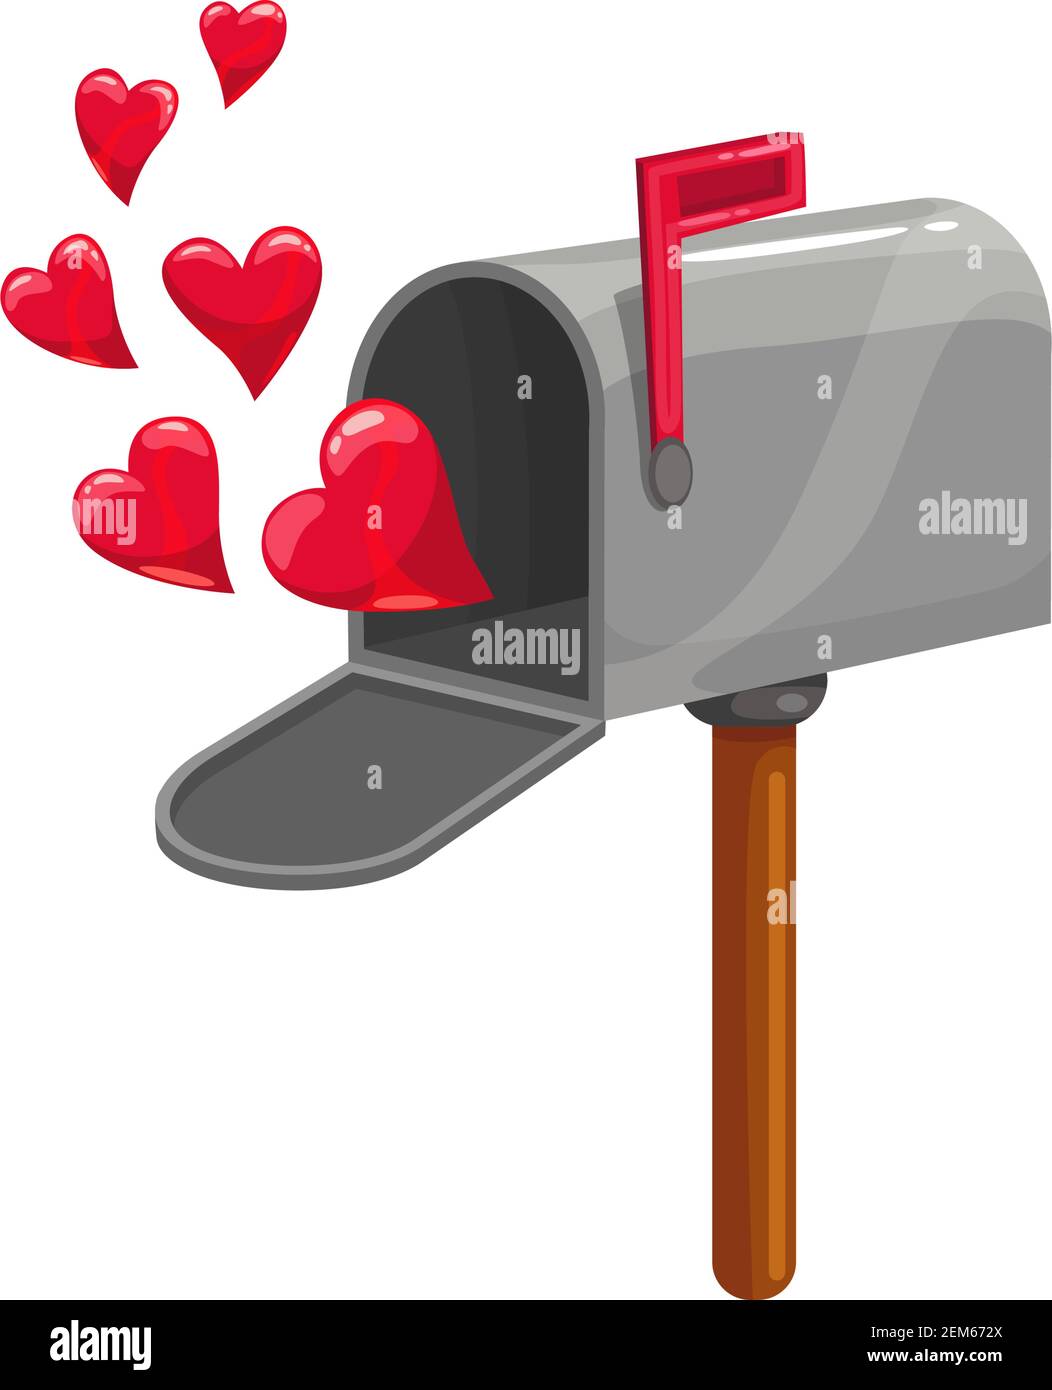 open mailbox cartoon